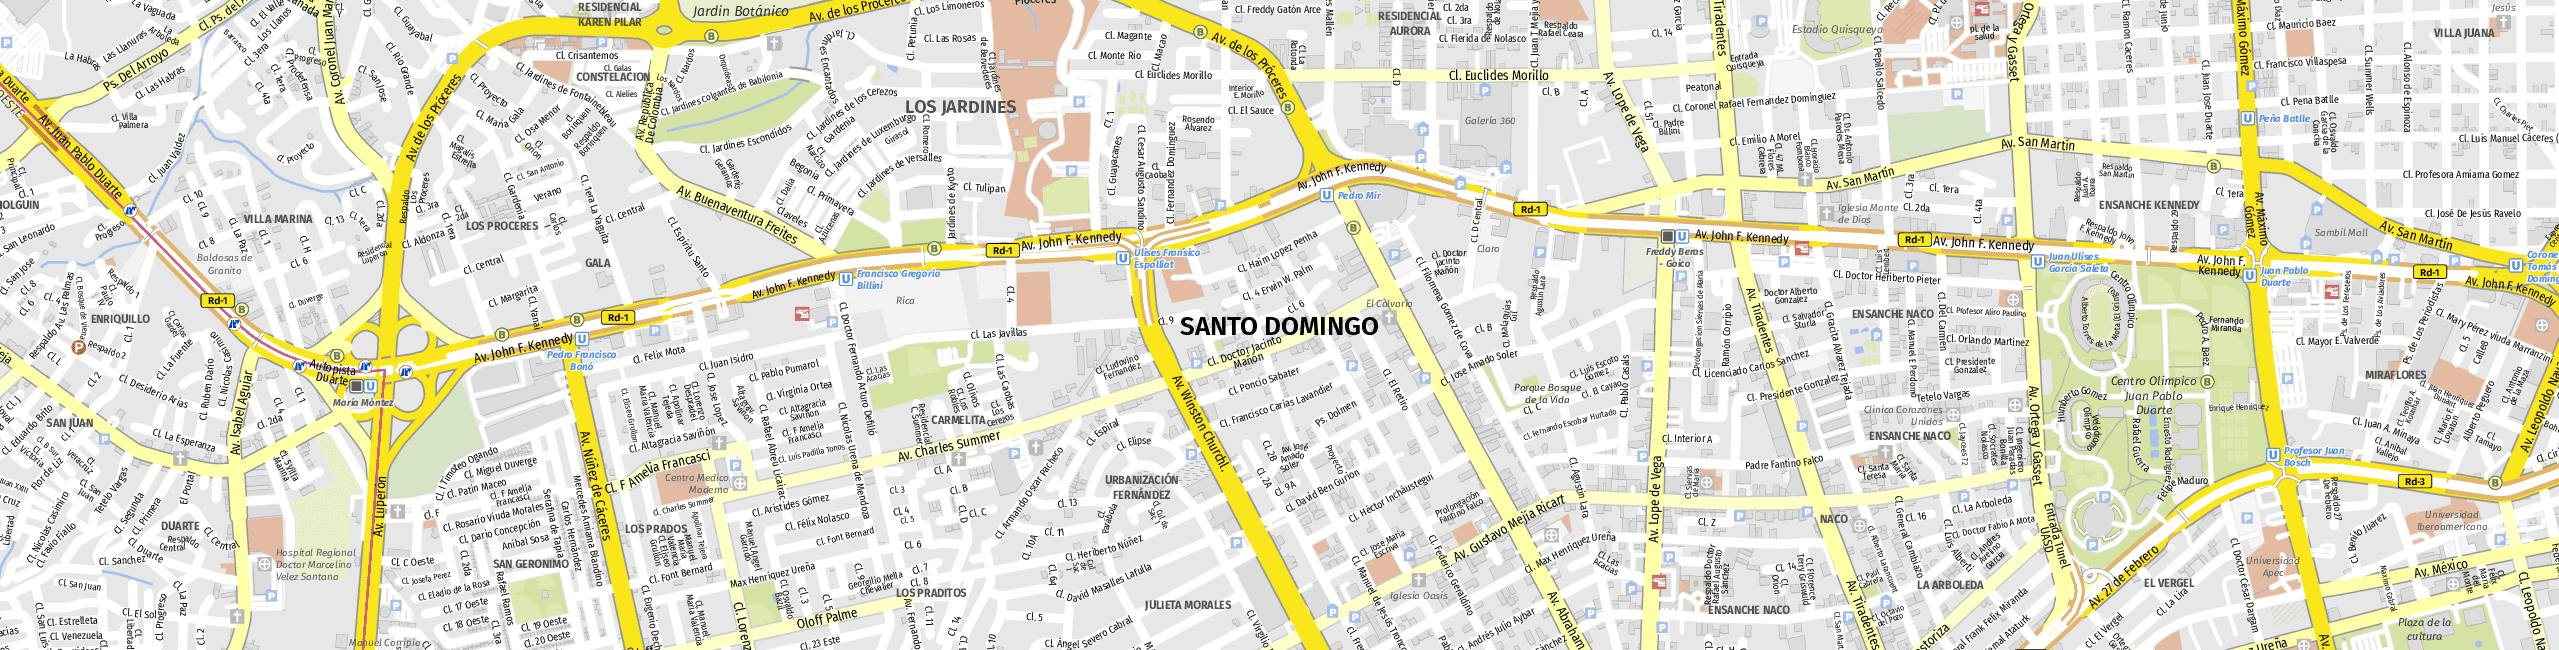 Stadtplan Santo Domingo zum Downloaden.